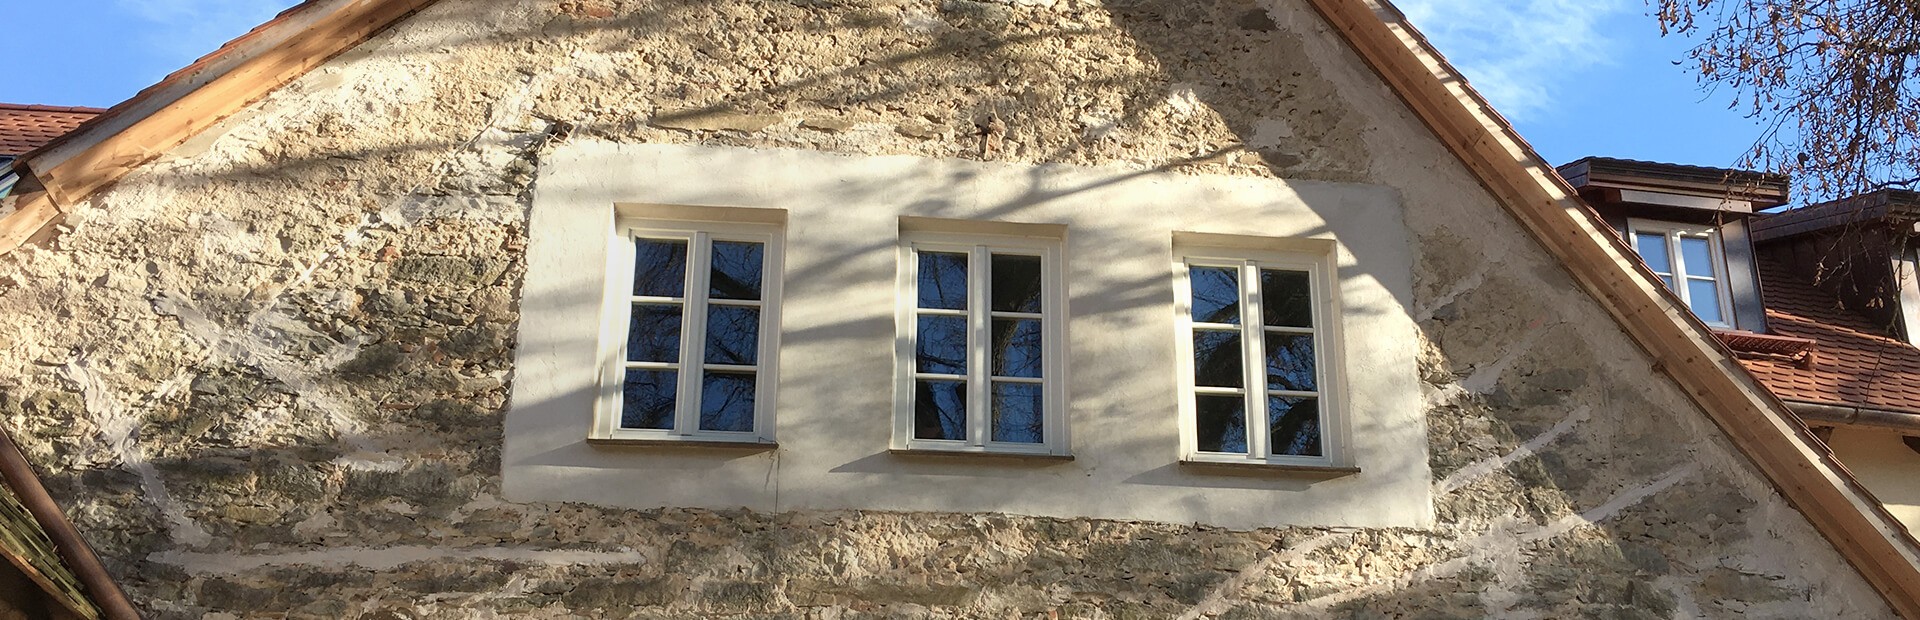 Denkmalschutz - Historische Fenster und Türen für denkmal­geschützte Gebäude.